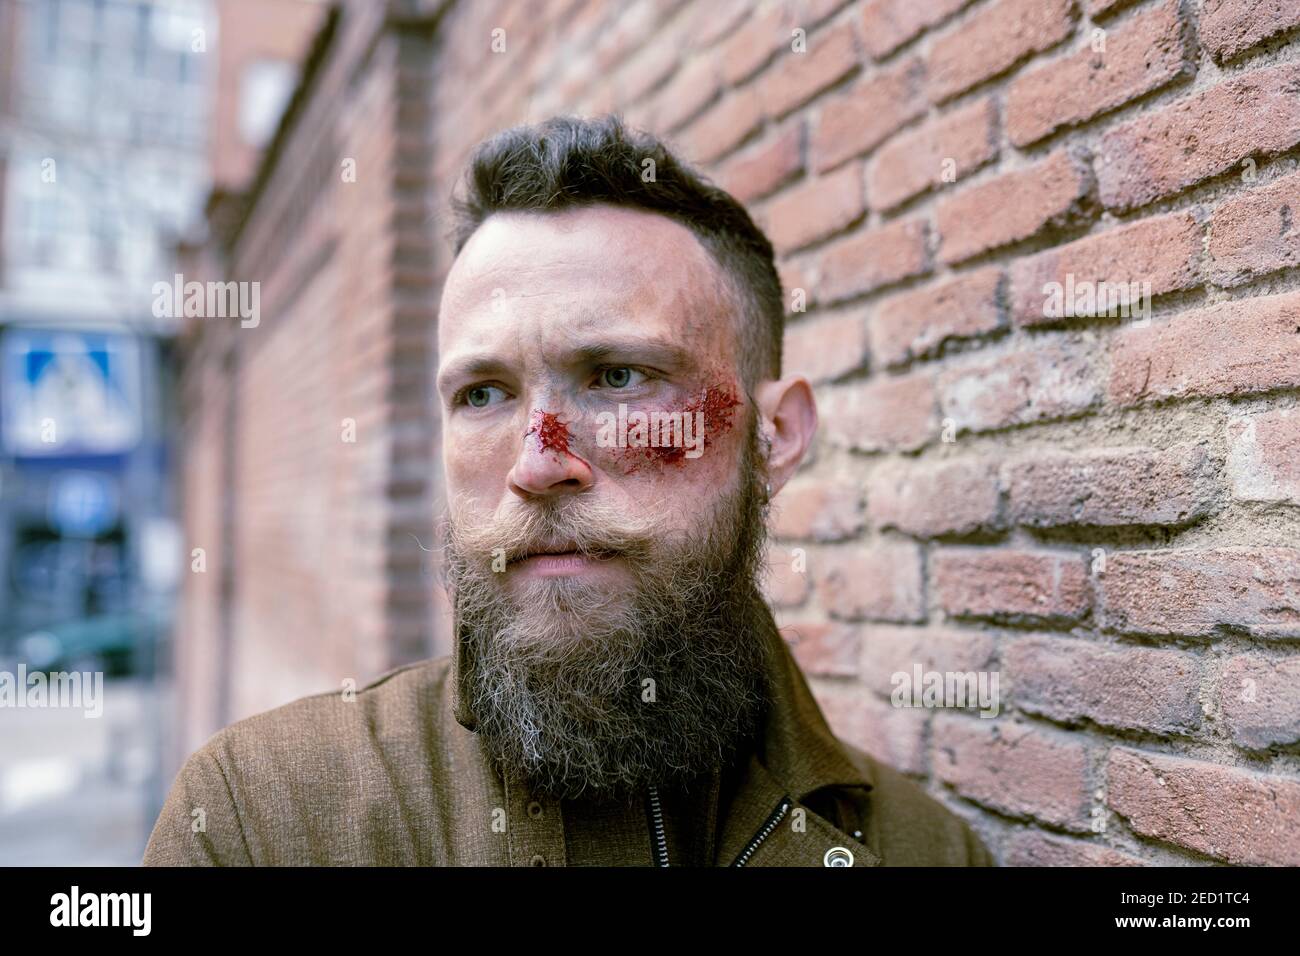 Vue latérale de l'homme hippster avec la barbe et le maquillage de cinéma posant dans la rue Banque D'Images